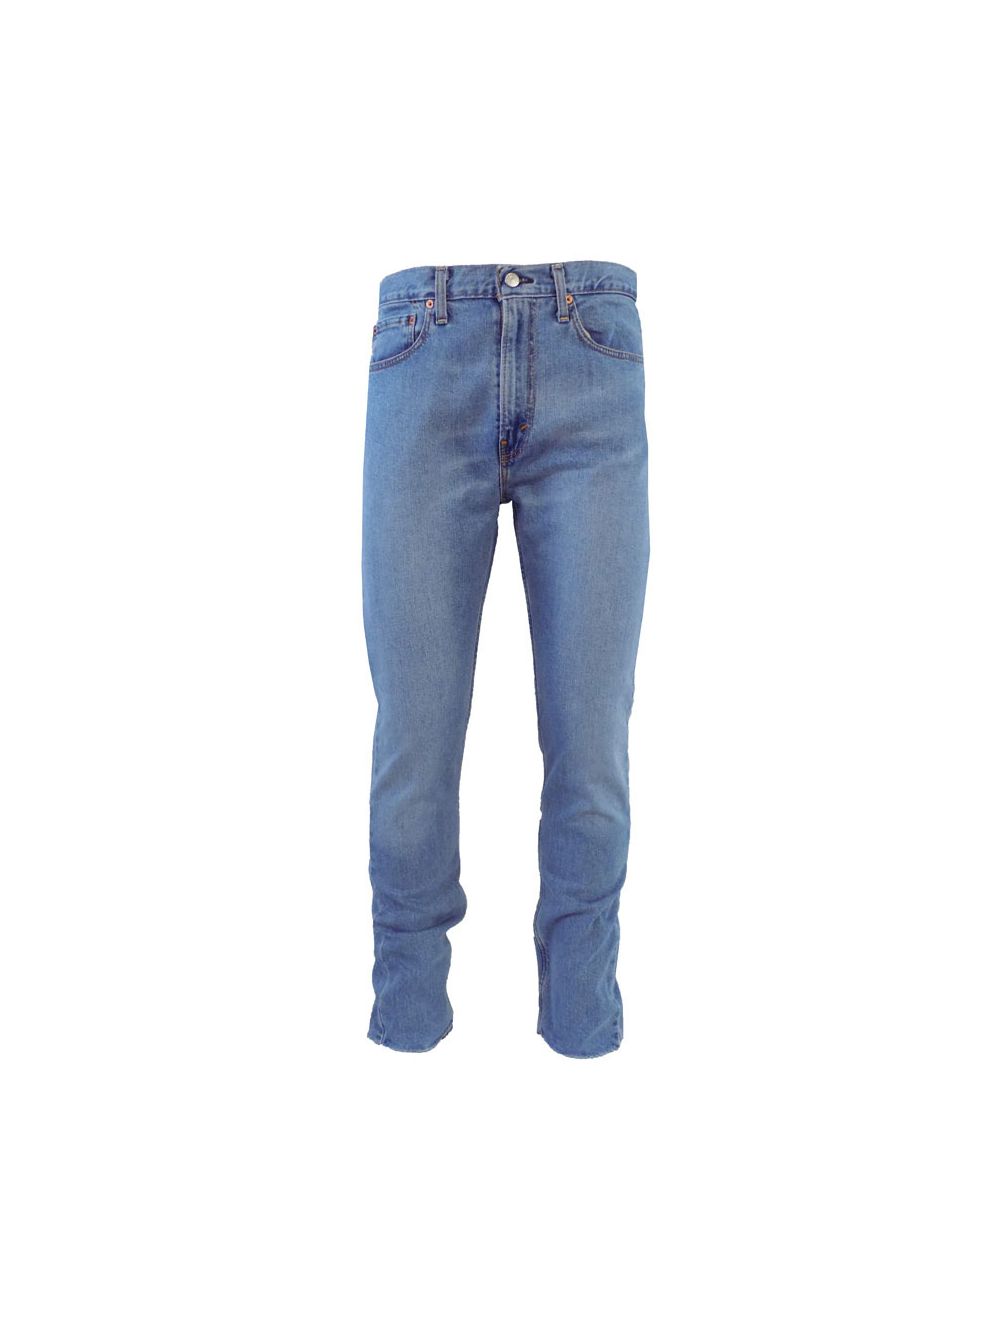 levis jeans 522 mens